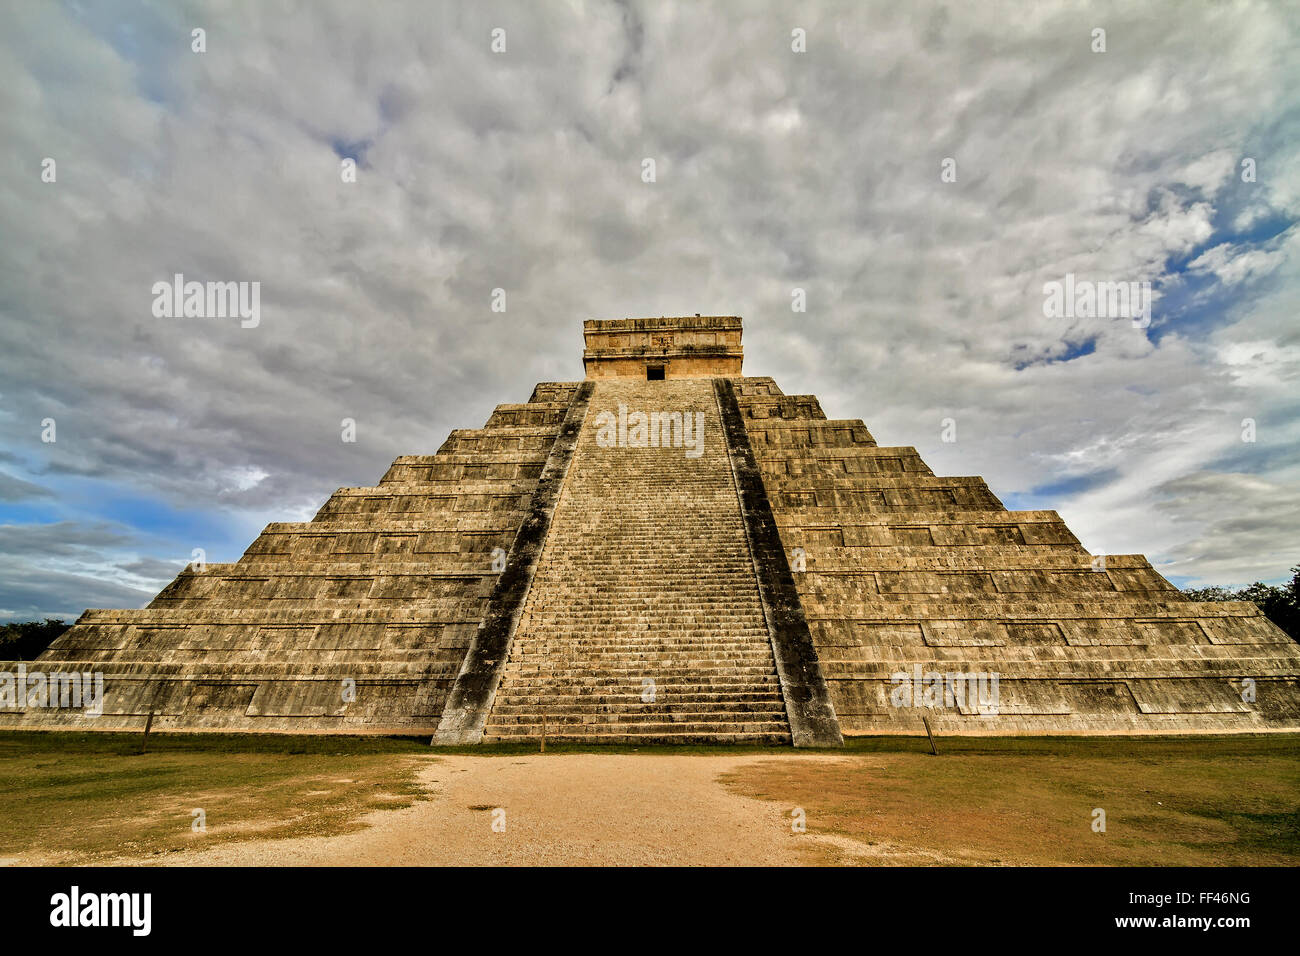 Pyramide de Chichen Itza au Mexique Banque D'Images